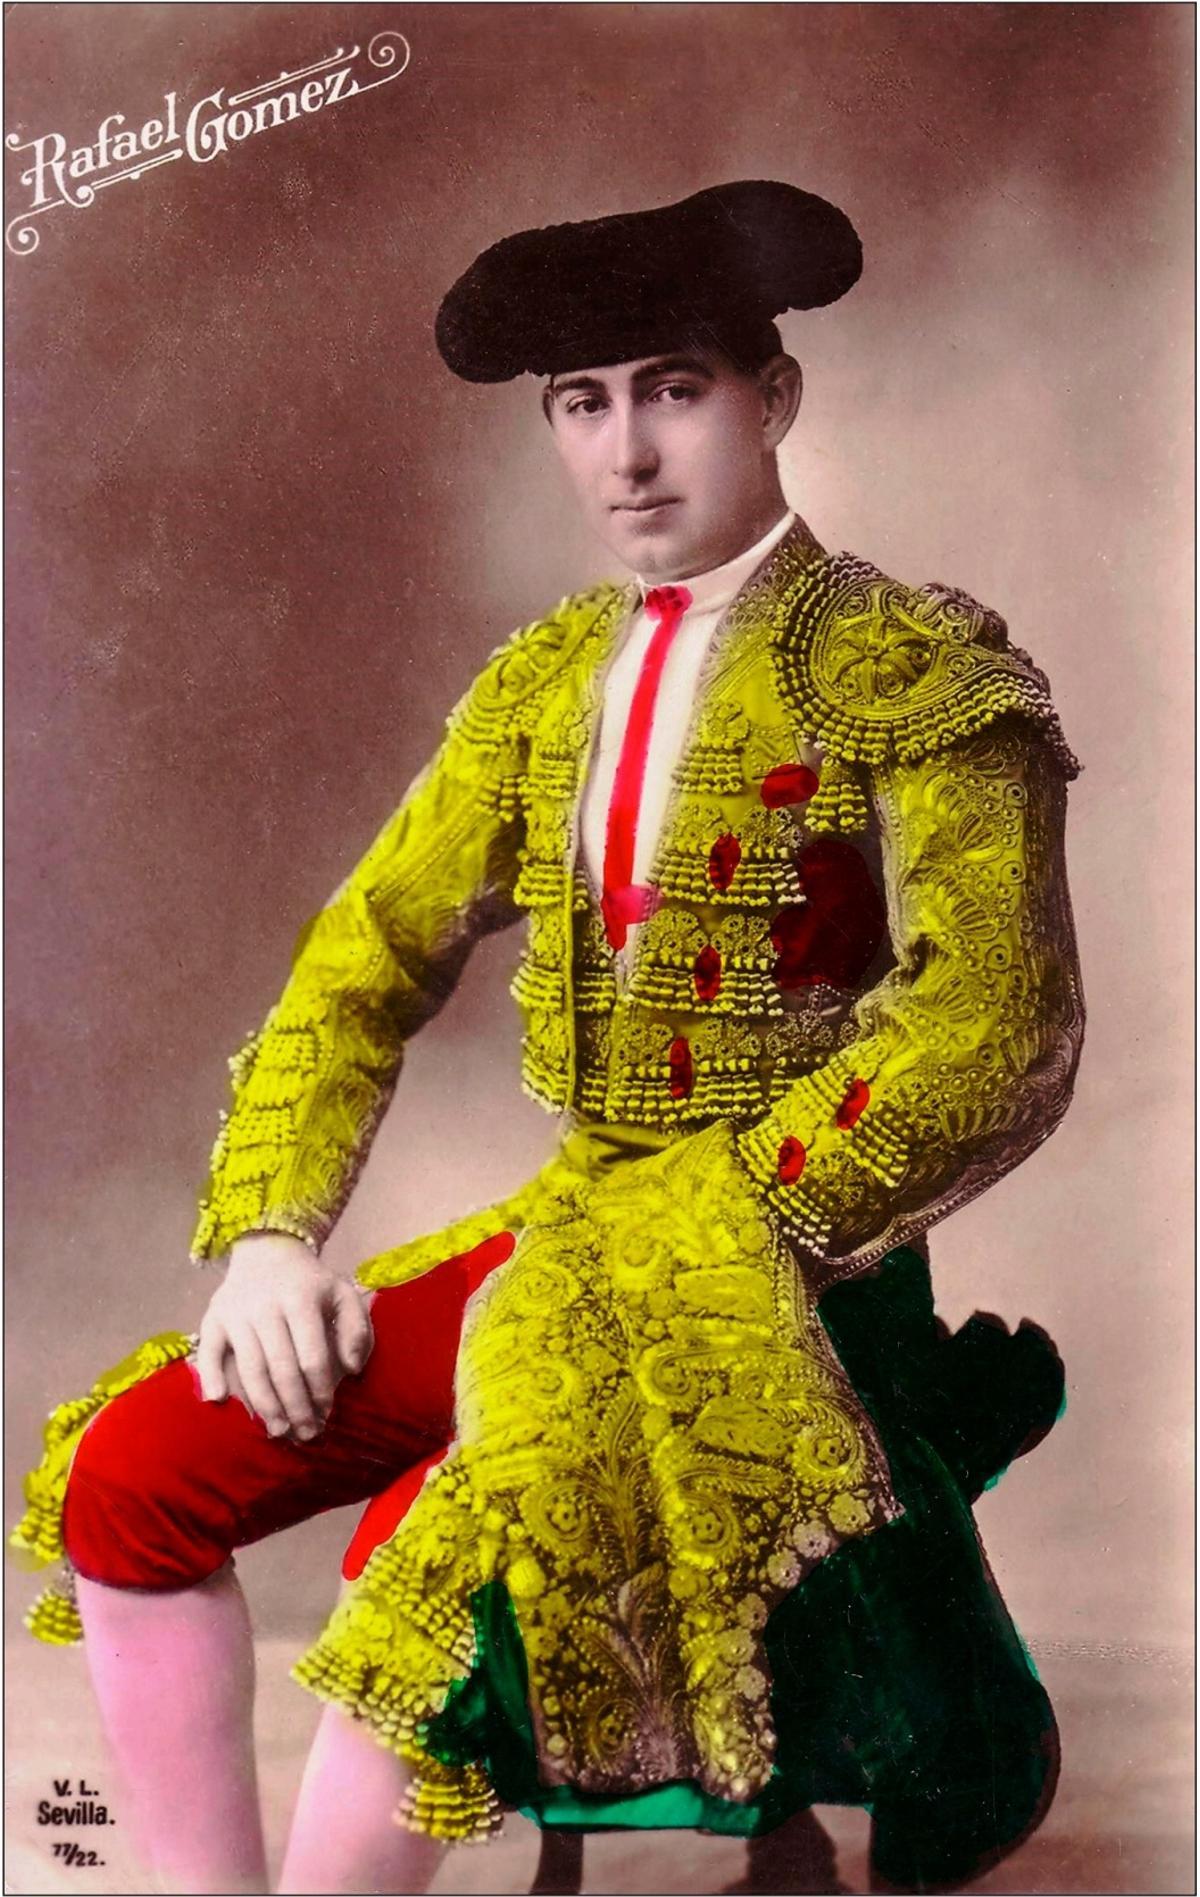 Fotografía coloreada del novillero malagueño, tomada en un estudio de Sevilla.